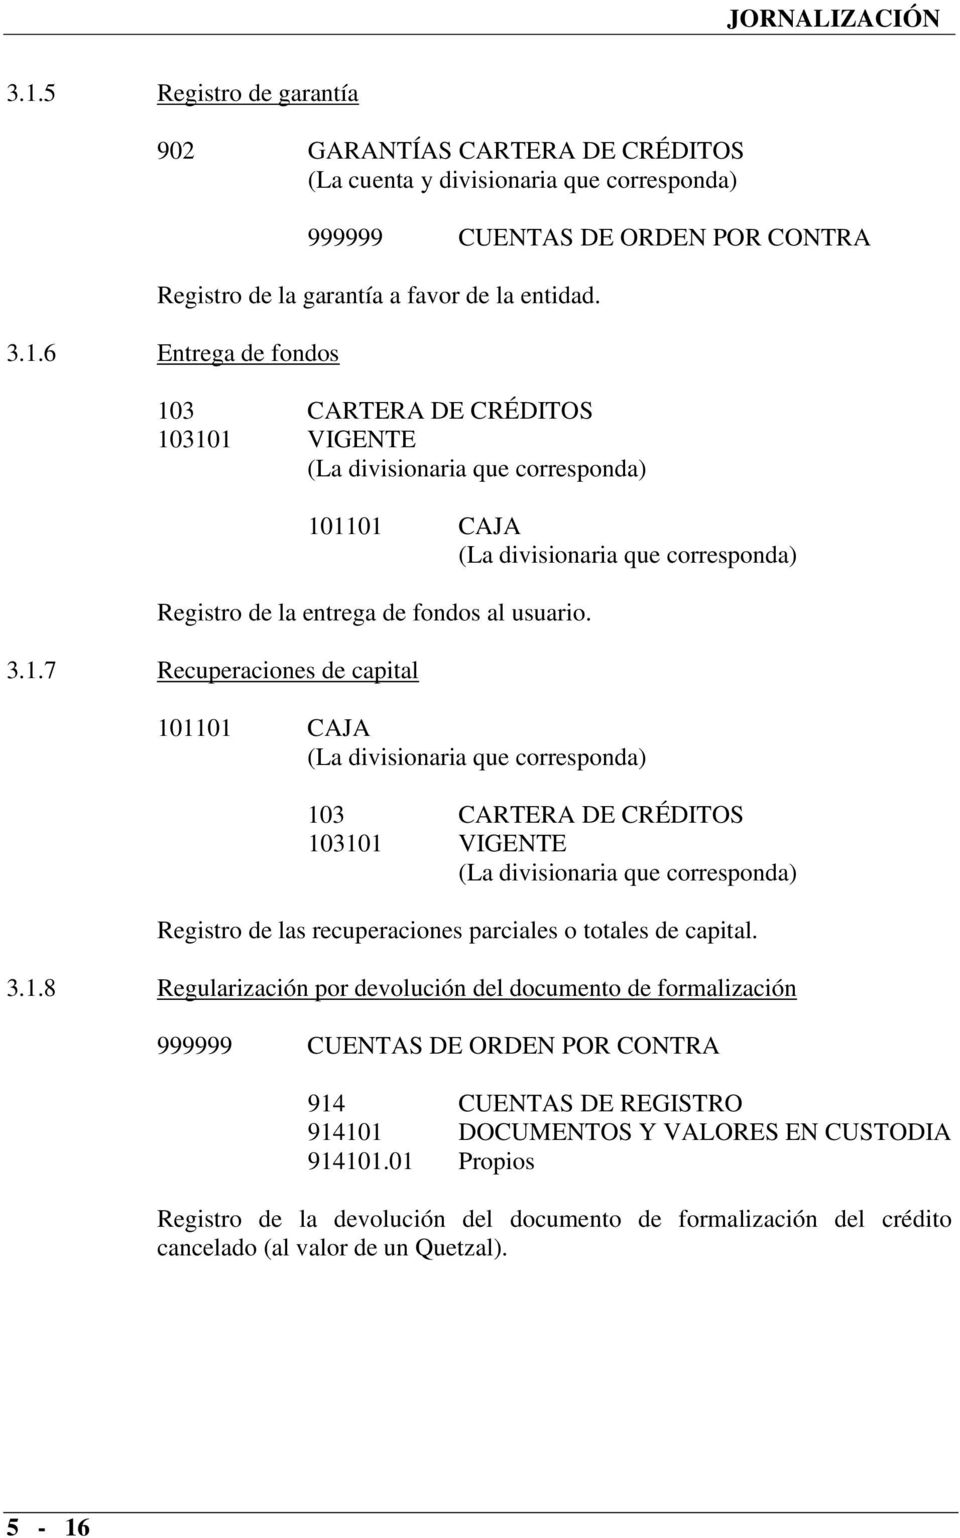 01 Propios Registro de la devolución del documento de formalización del crédito cancelado (al valor de un Quetzal). 5-16